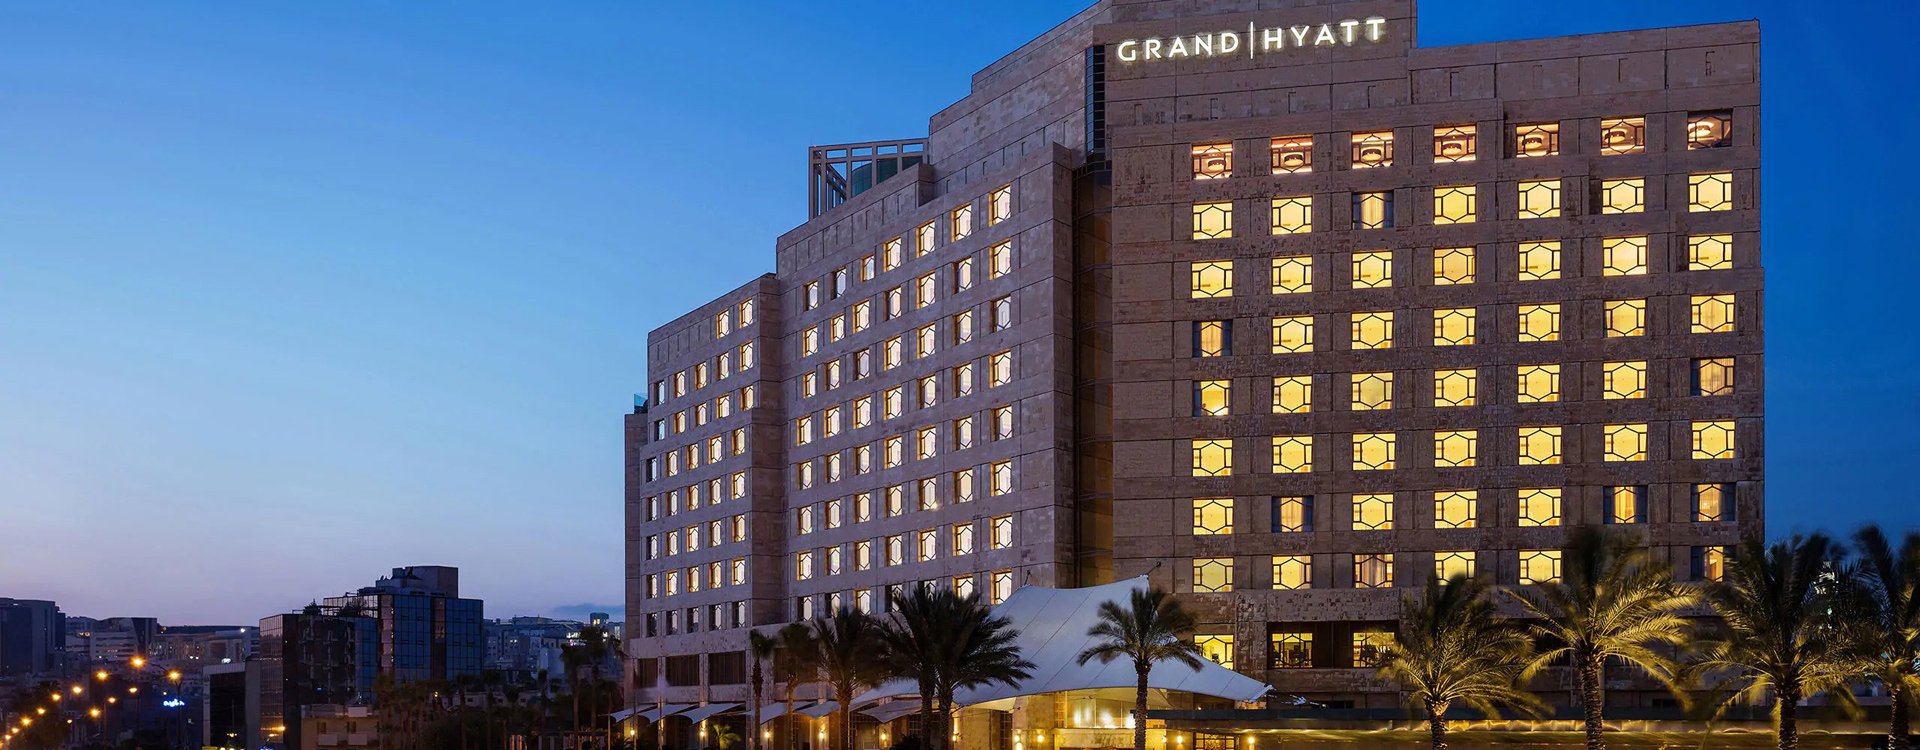 Grand Hyatt Amman_Ext Buiding_Evening